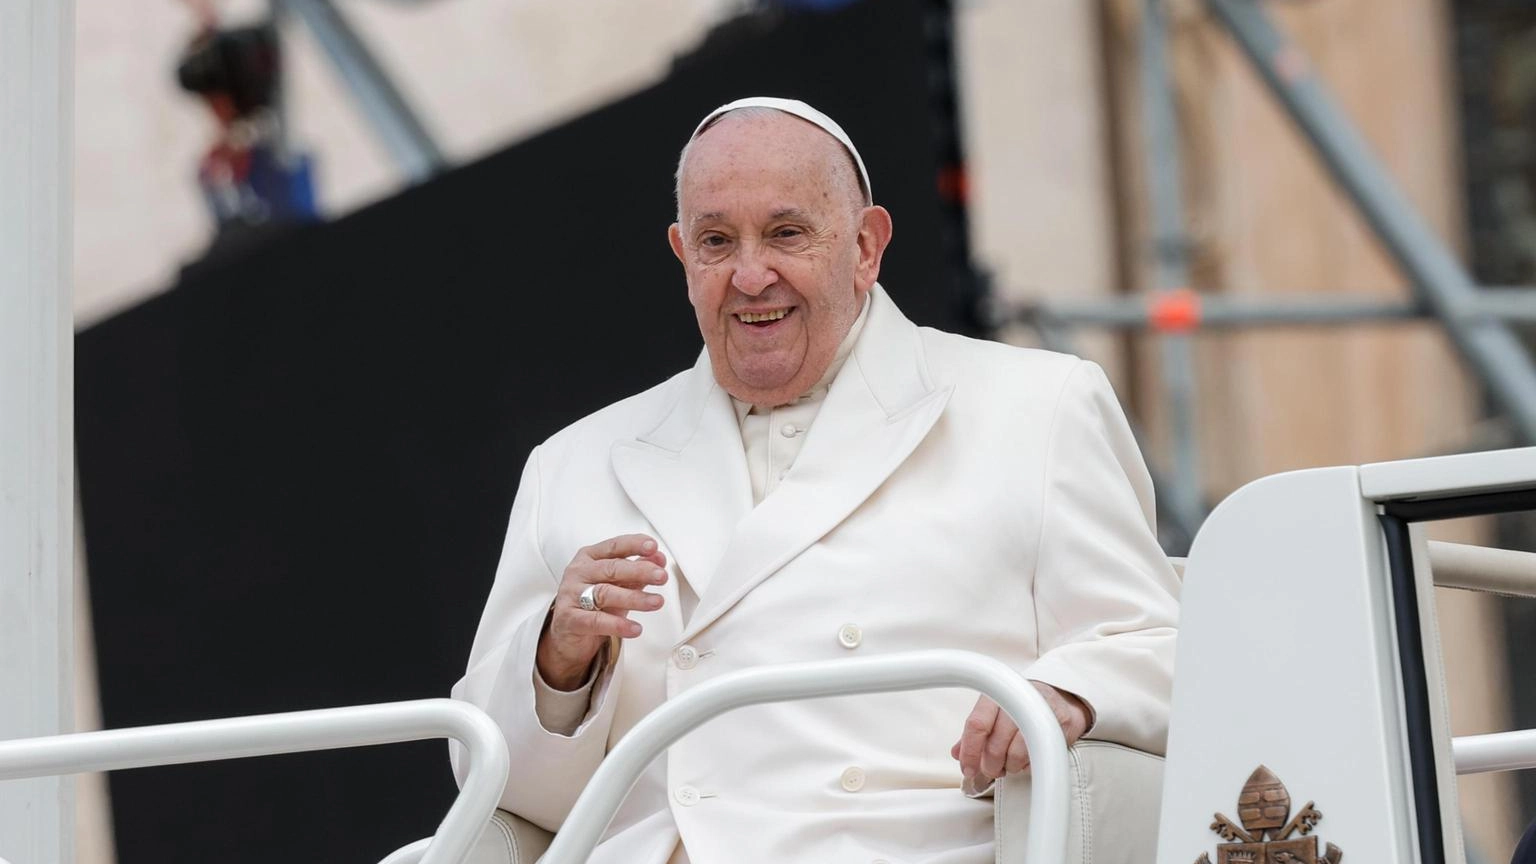 Il Papa al G7 in Puglia sull'AI, parteciperà 'in presenza'